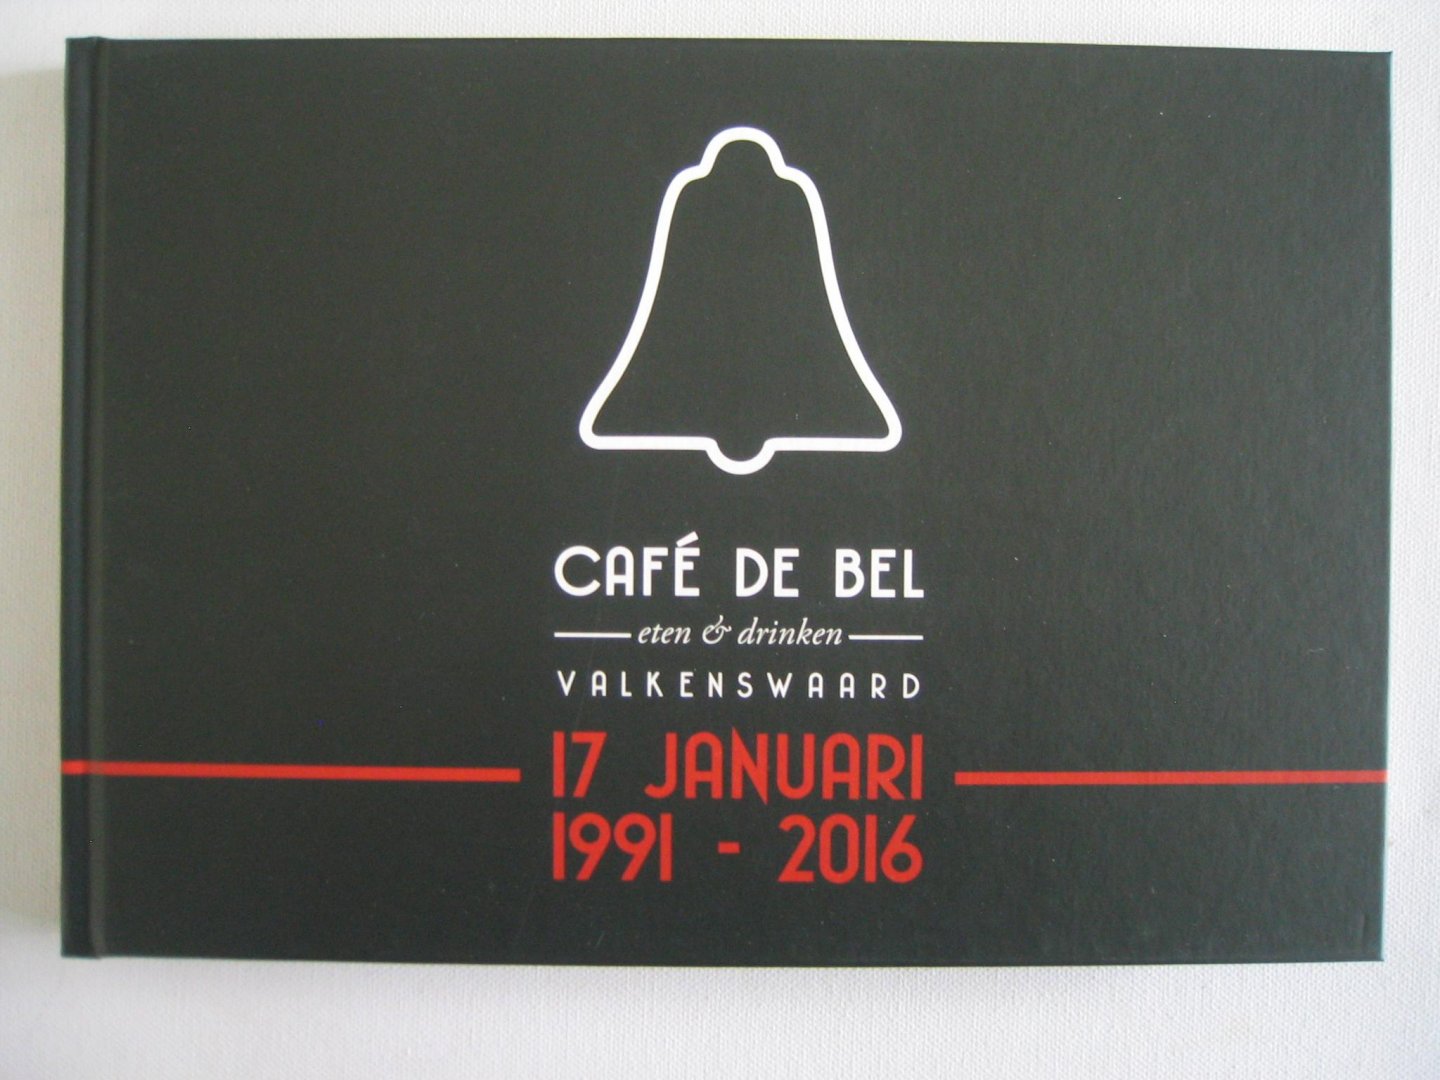 Paul van den Dungen e.a. - Café de Bel Valkenswaard - 17 januari 1991 - 2016